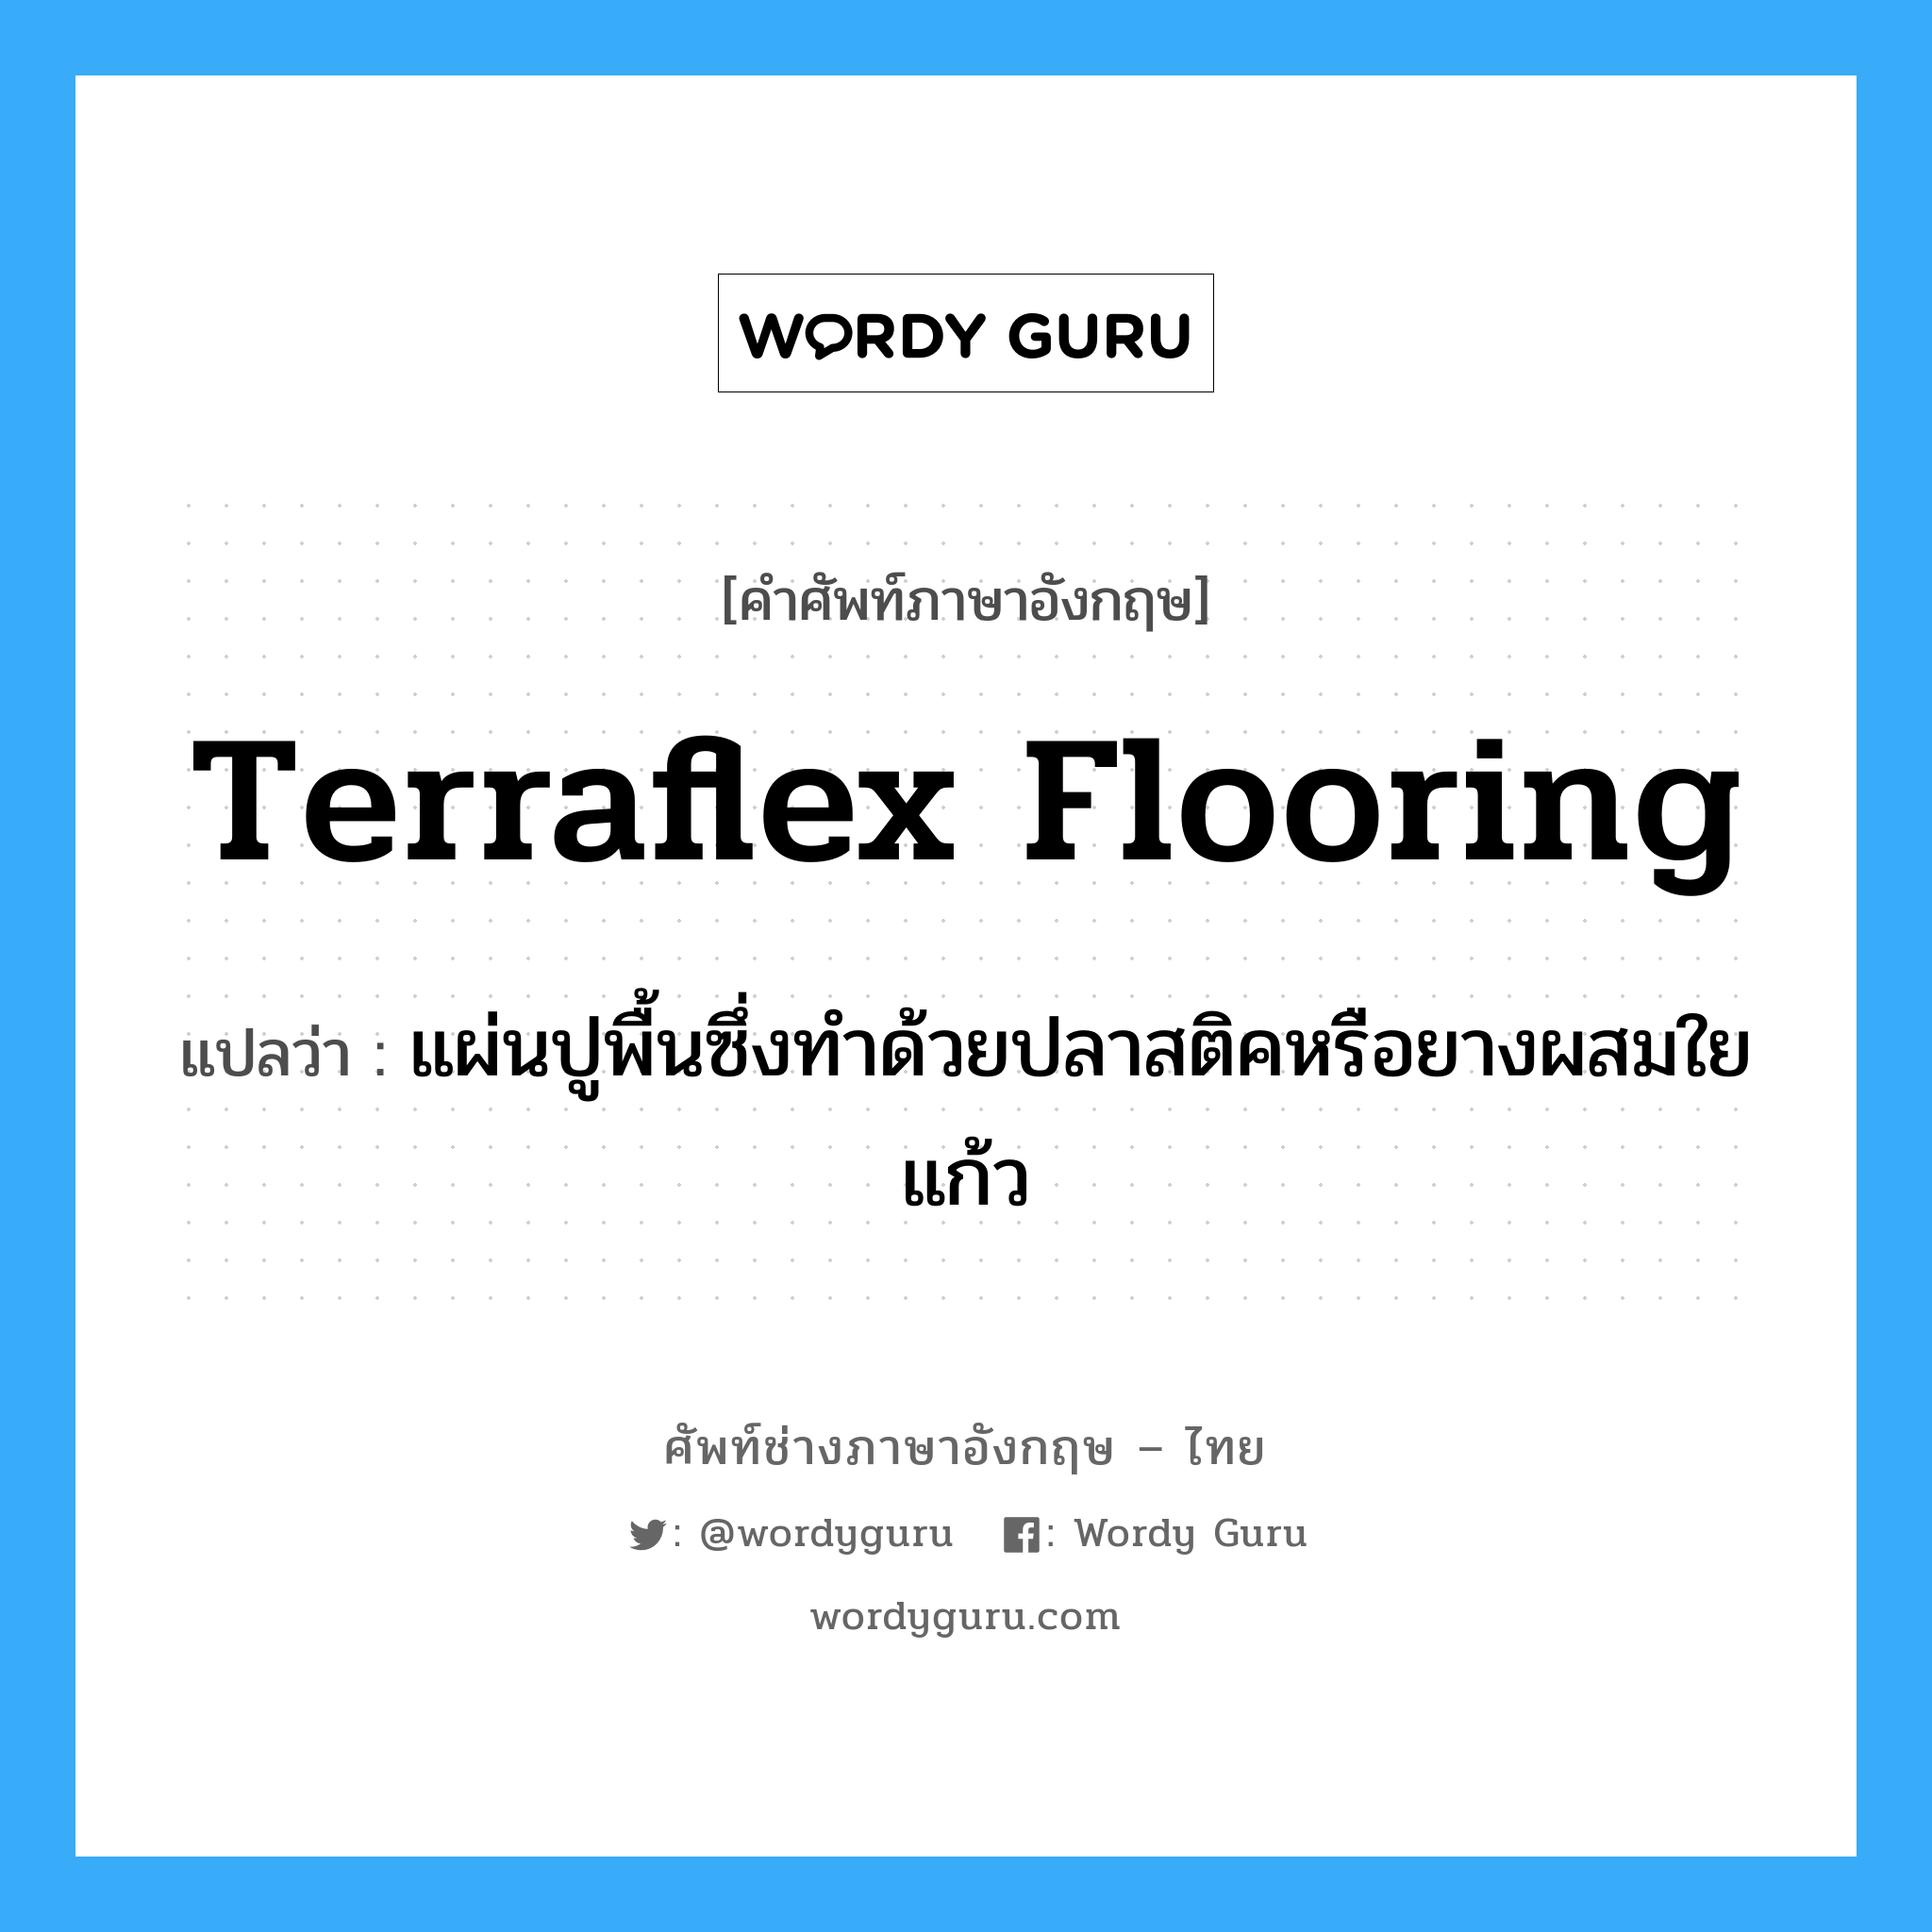 terraflex flooring แปลว่า?, คำศัพท์ช่างภาษาอังกฤษ - ไทย terraflex flooring คำศัพท์ภาษาอังกฤษ terraflex flooring แปลว่า แผ่นปูพื้นซึ่งทำด้วยปลาสติคหรือยางผสมใยแก้ว